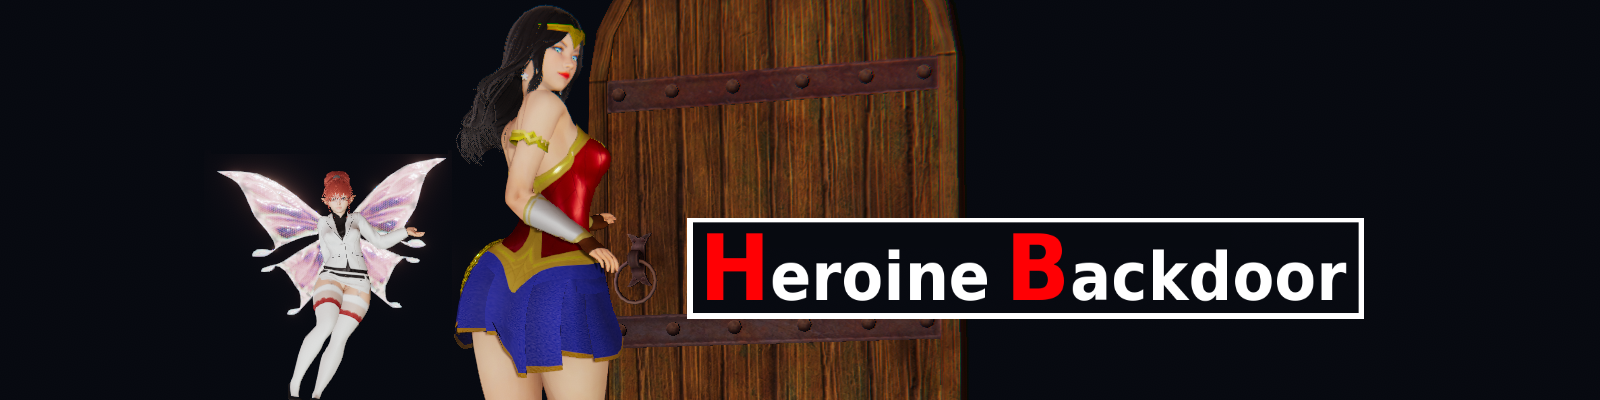 Heroine Backdoor poster